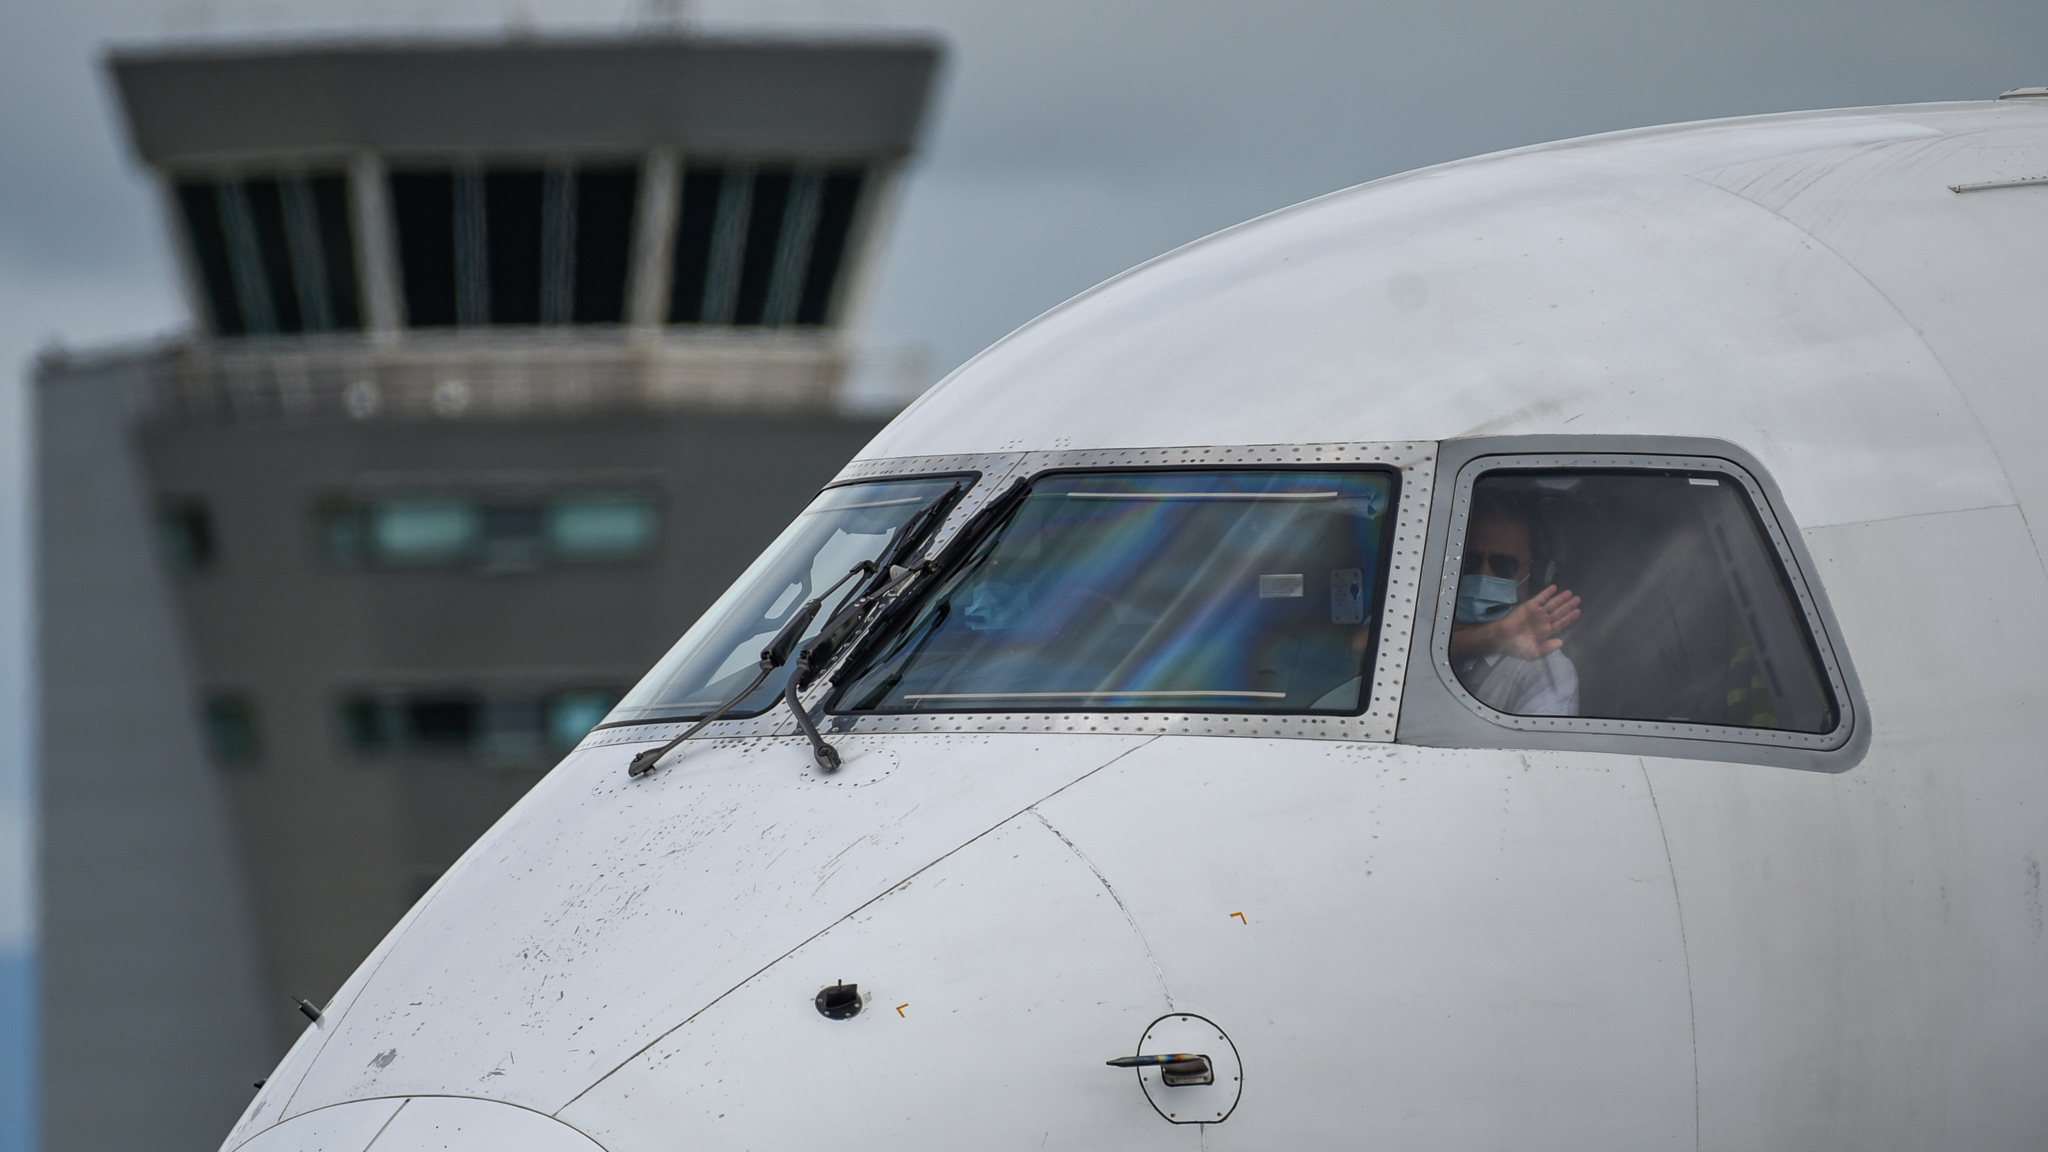  A atividade é voltada aos amantes da fotografia de aviação. Os spotters, como são conhecidos, irão acessar espaços privilegiados do terminal, inclusive o pátio, para fotografar as aeronaves de um ângulo diferente e com mais proximidade.